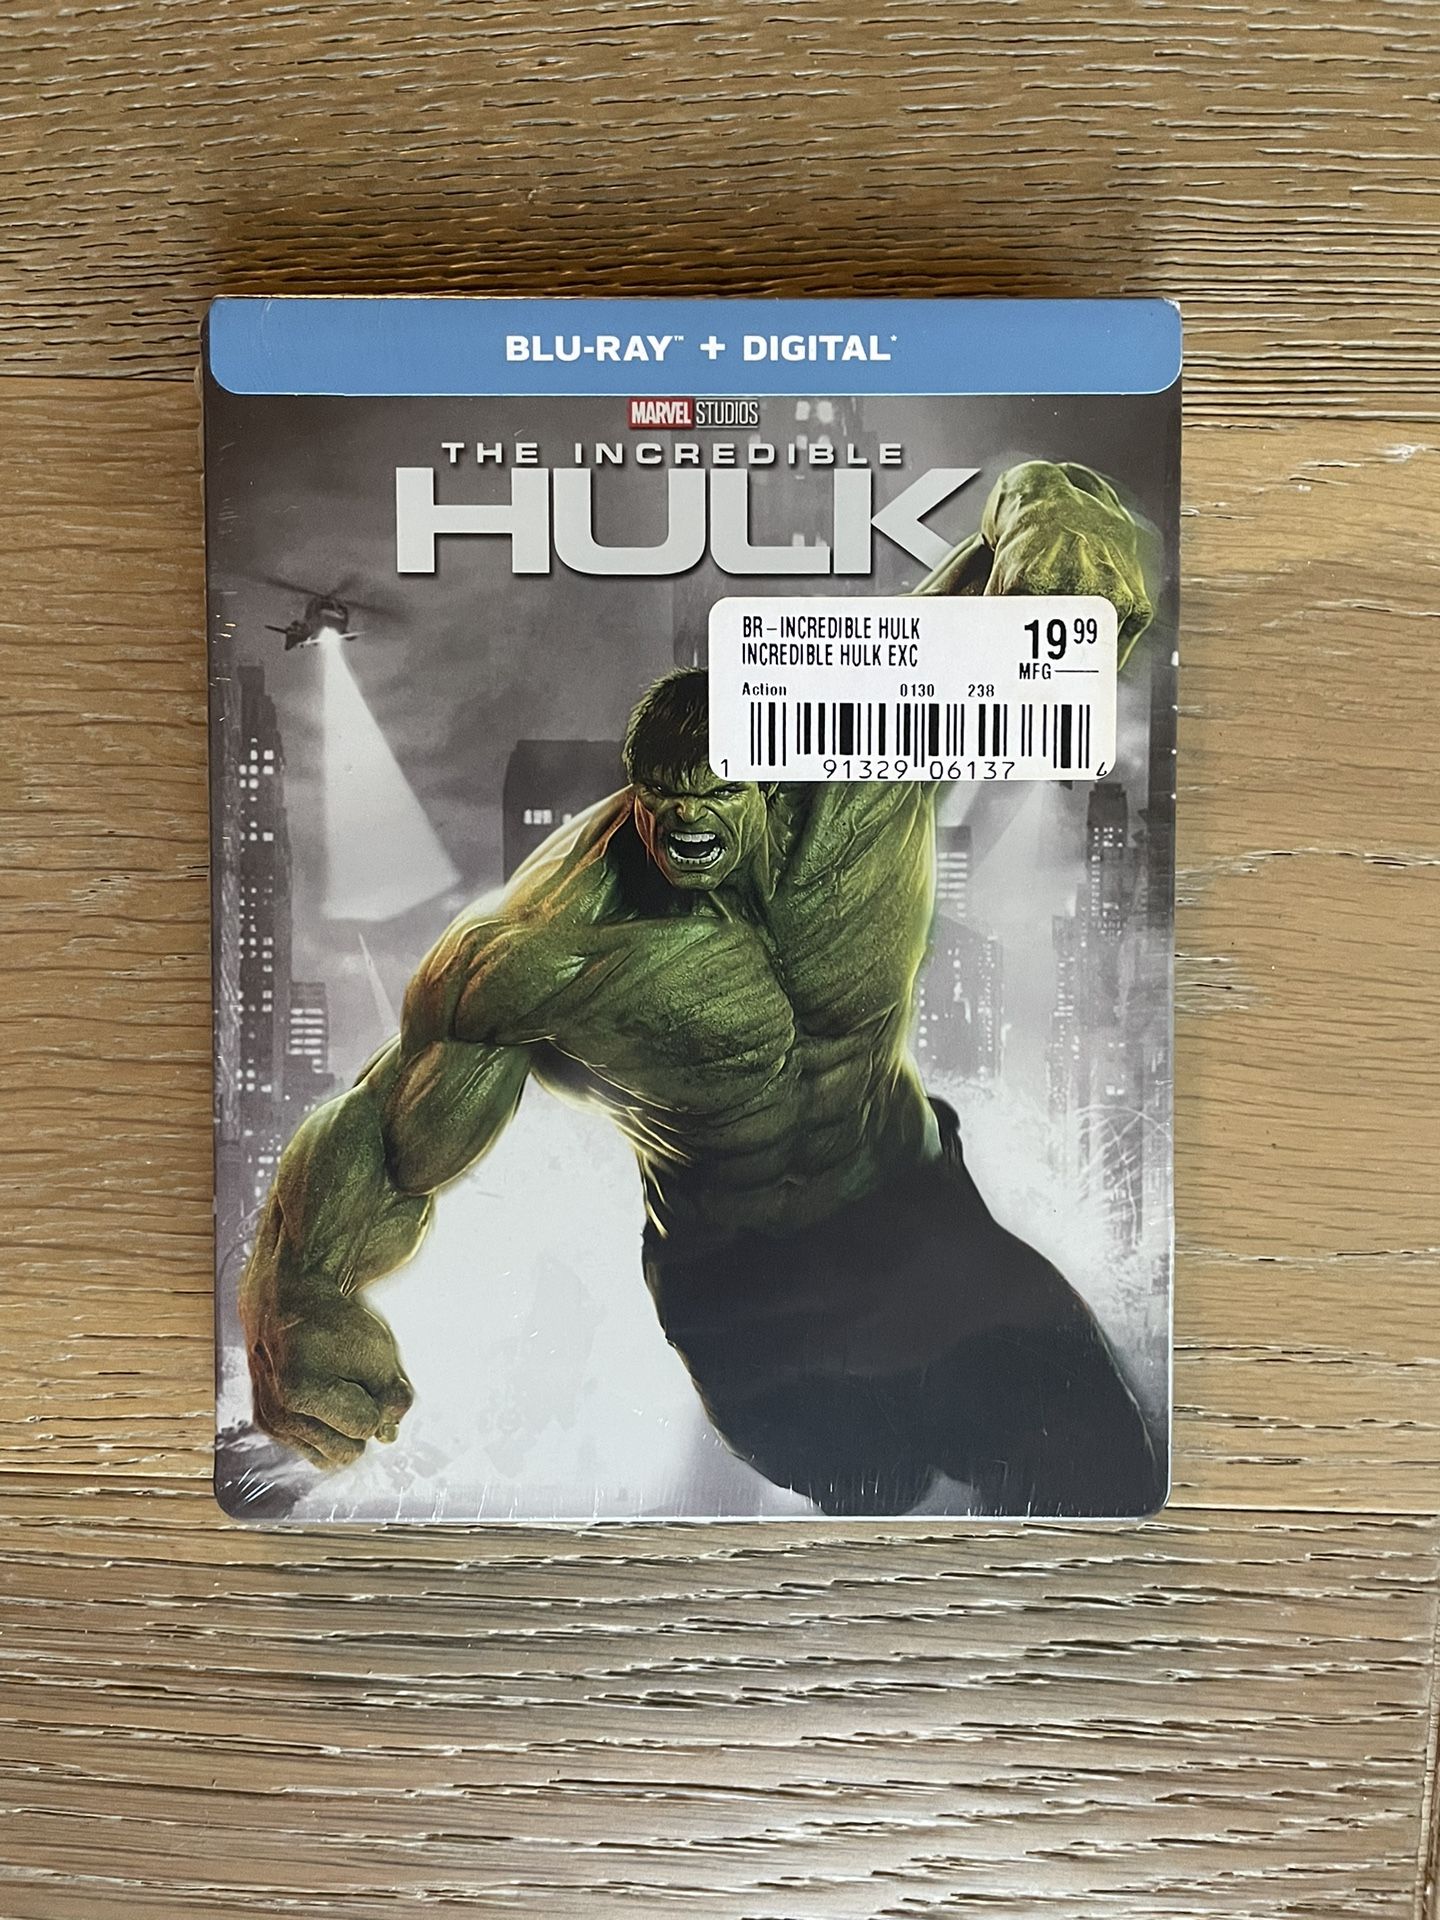 The Incredible Hulk Blu-ray Steelbook 